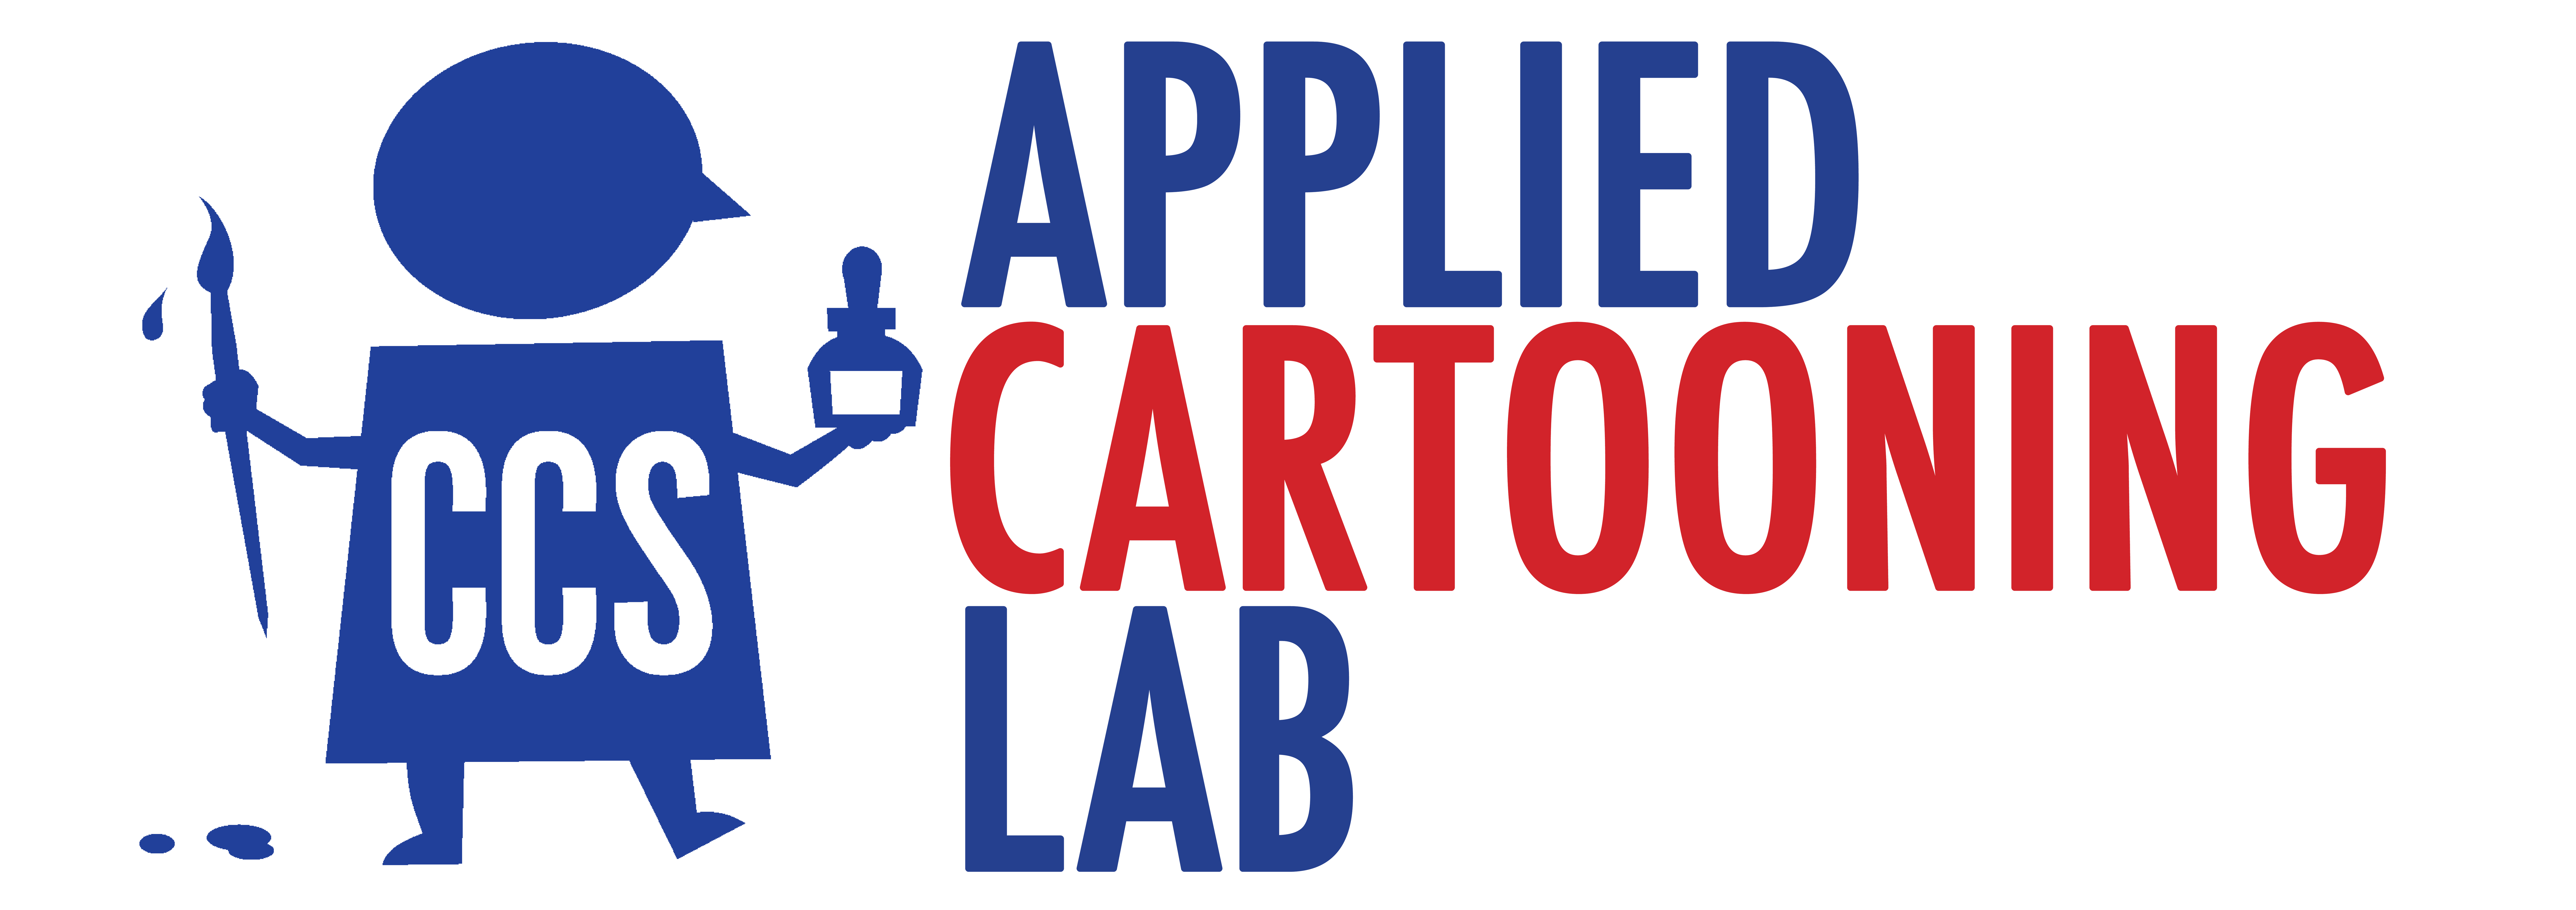 Applied Cartooning Lab